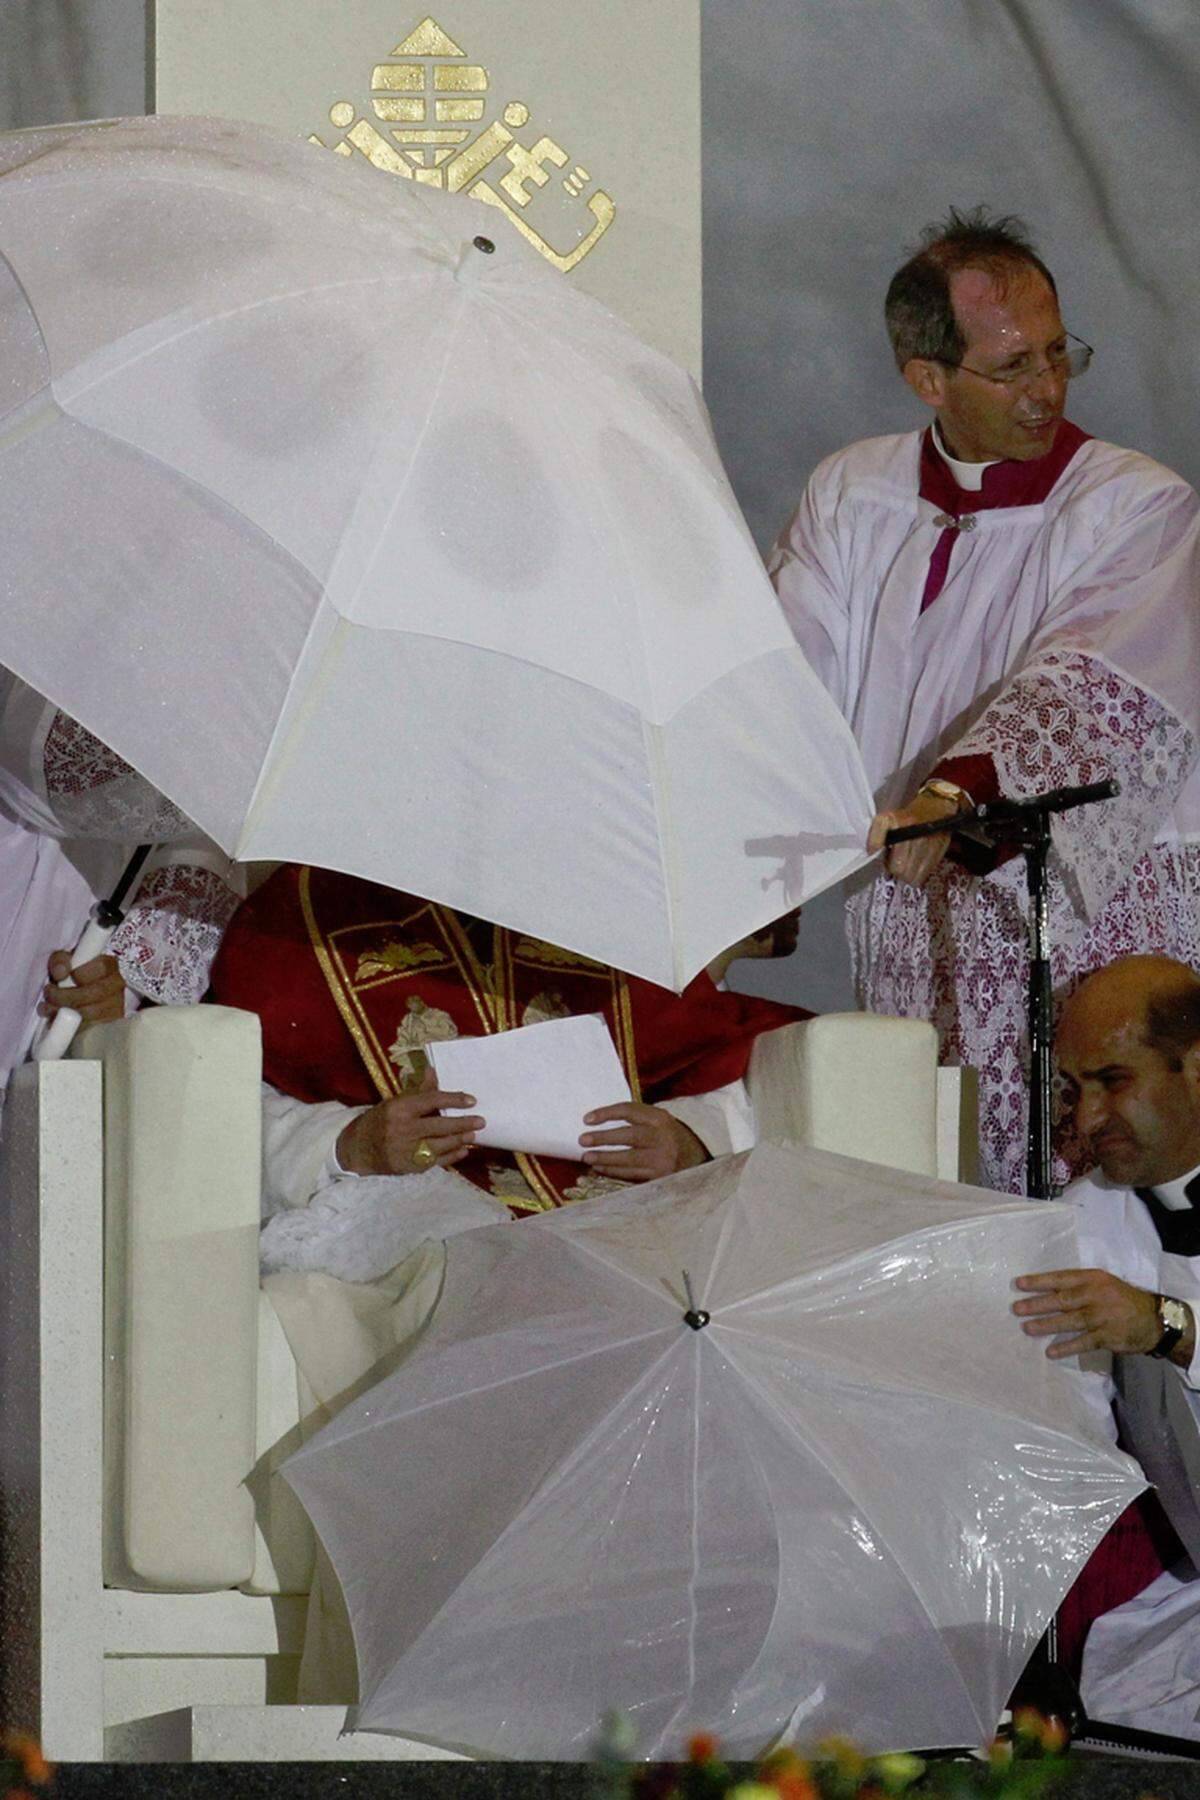 Plötzliche heftige Windstöße rissen kurz nach dem Beginn der Predigt die weiße Kopfbedeckung des Papstes fort. Der 84-Jährige griff mit zerwühltem Haar nach seinem durchnässten Manuskript und zog sich unter einen größeren Schirm zurück.